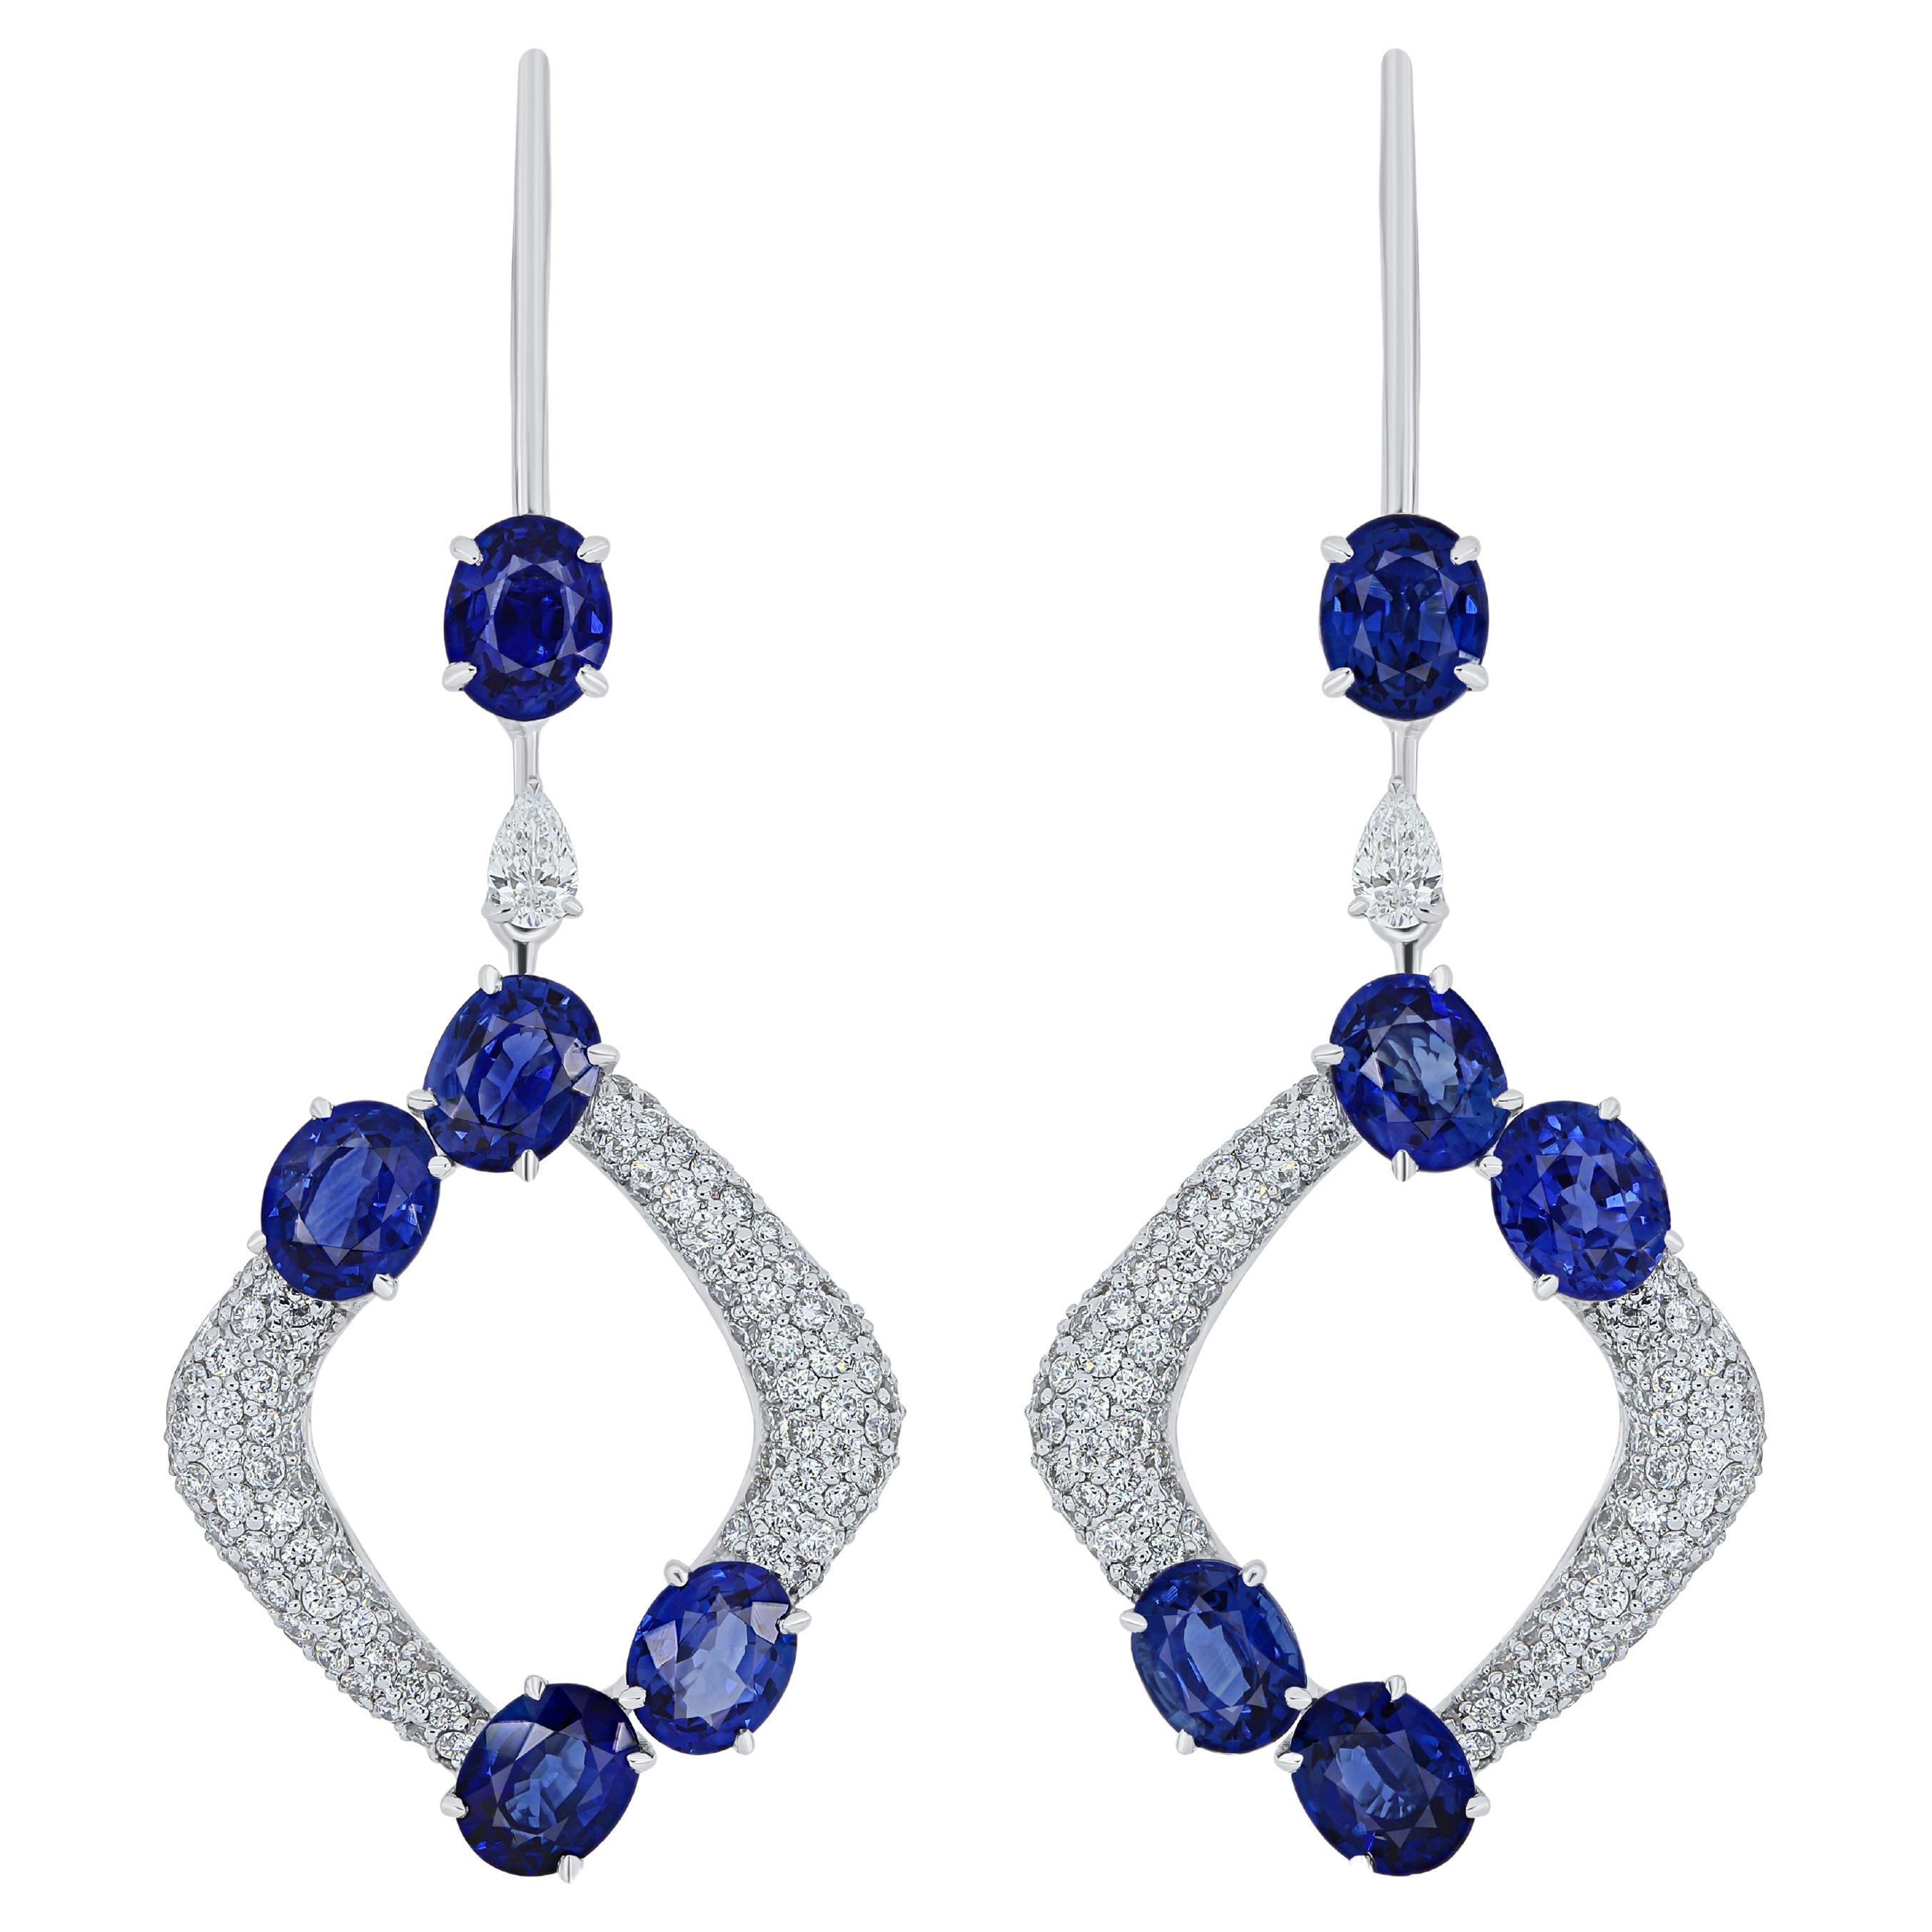 Boucles d'oreilles cloutées en or blanc 18 carats avec saphir bleu et diamants